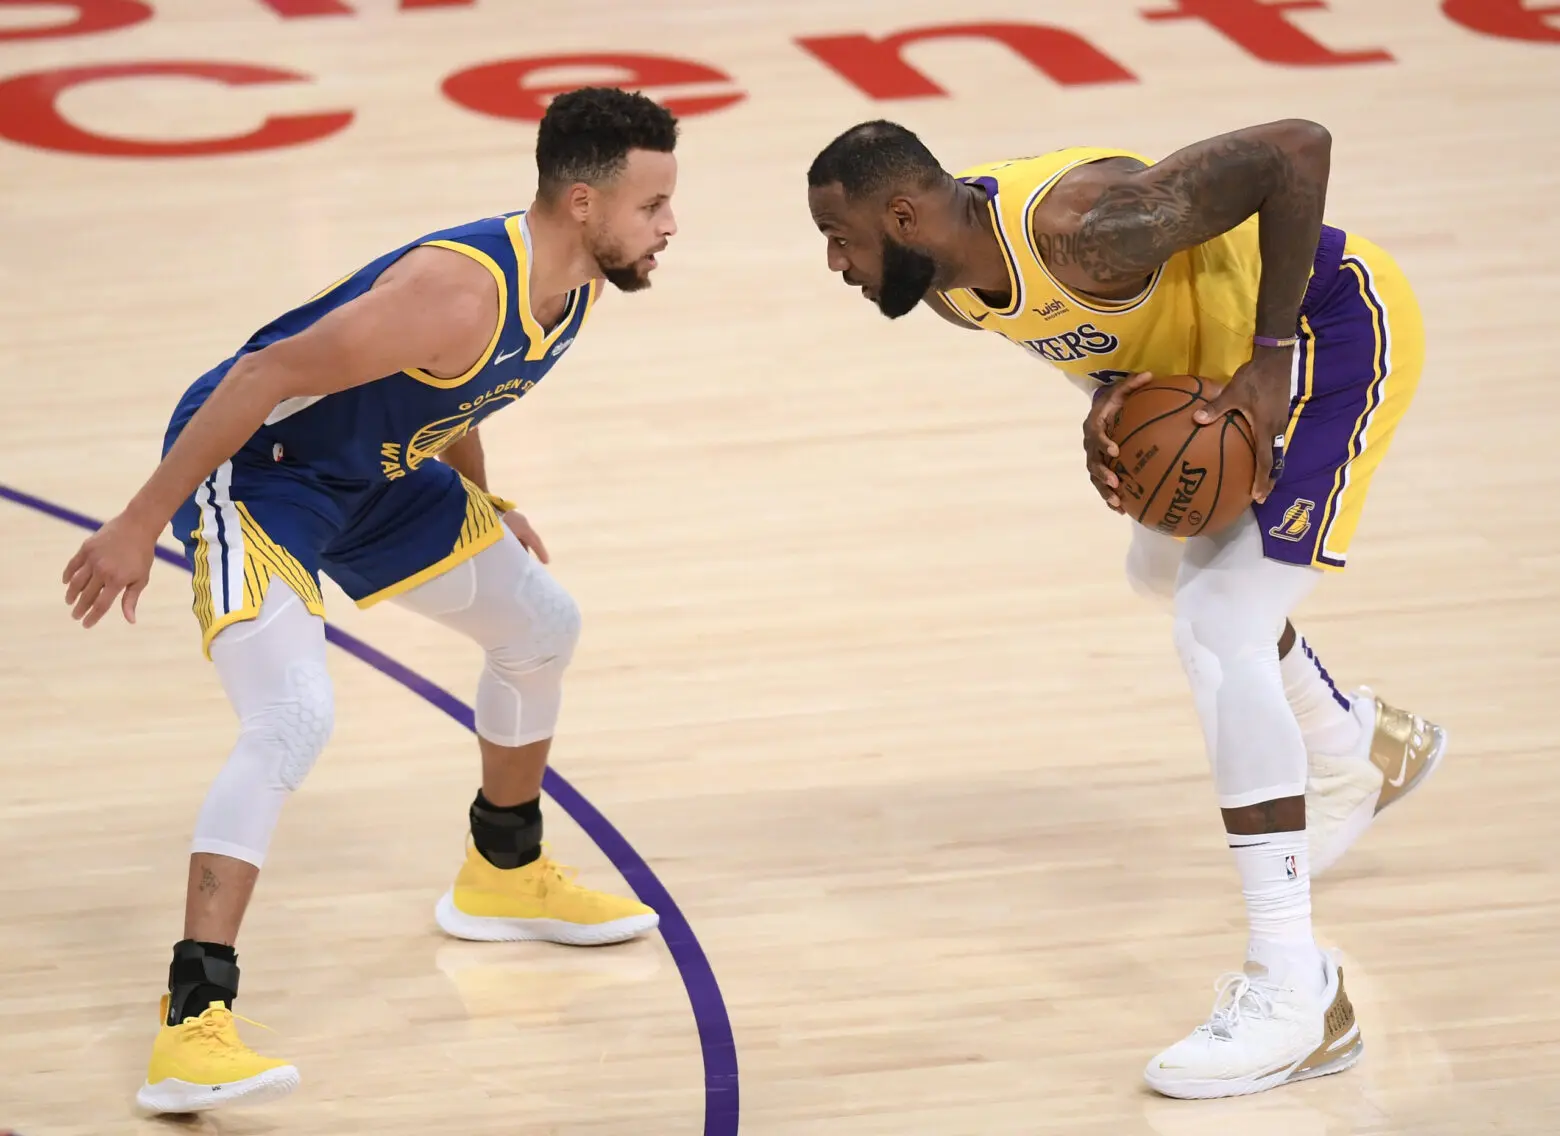 The Playoffs » 5 jogos interessantes dos Lakers no início de 2023